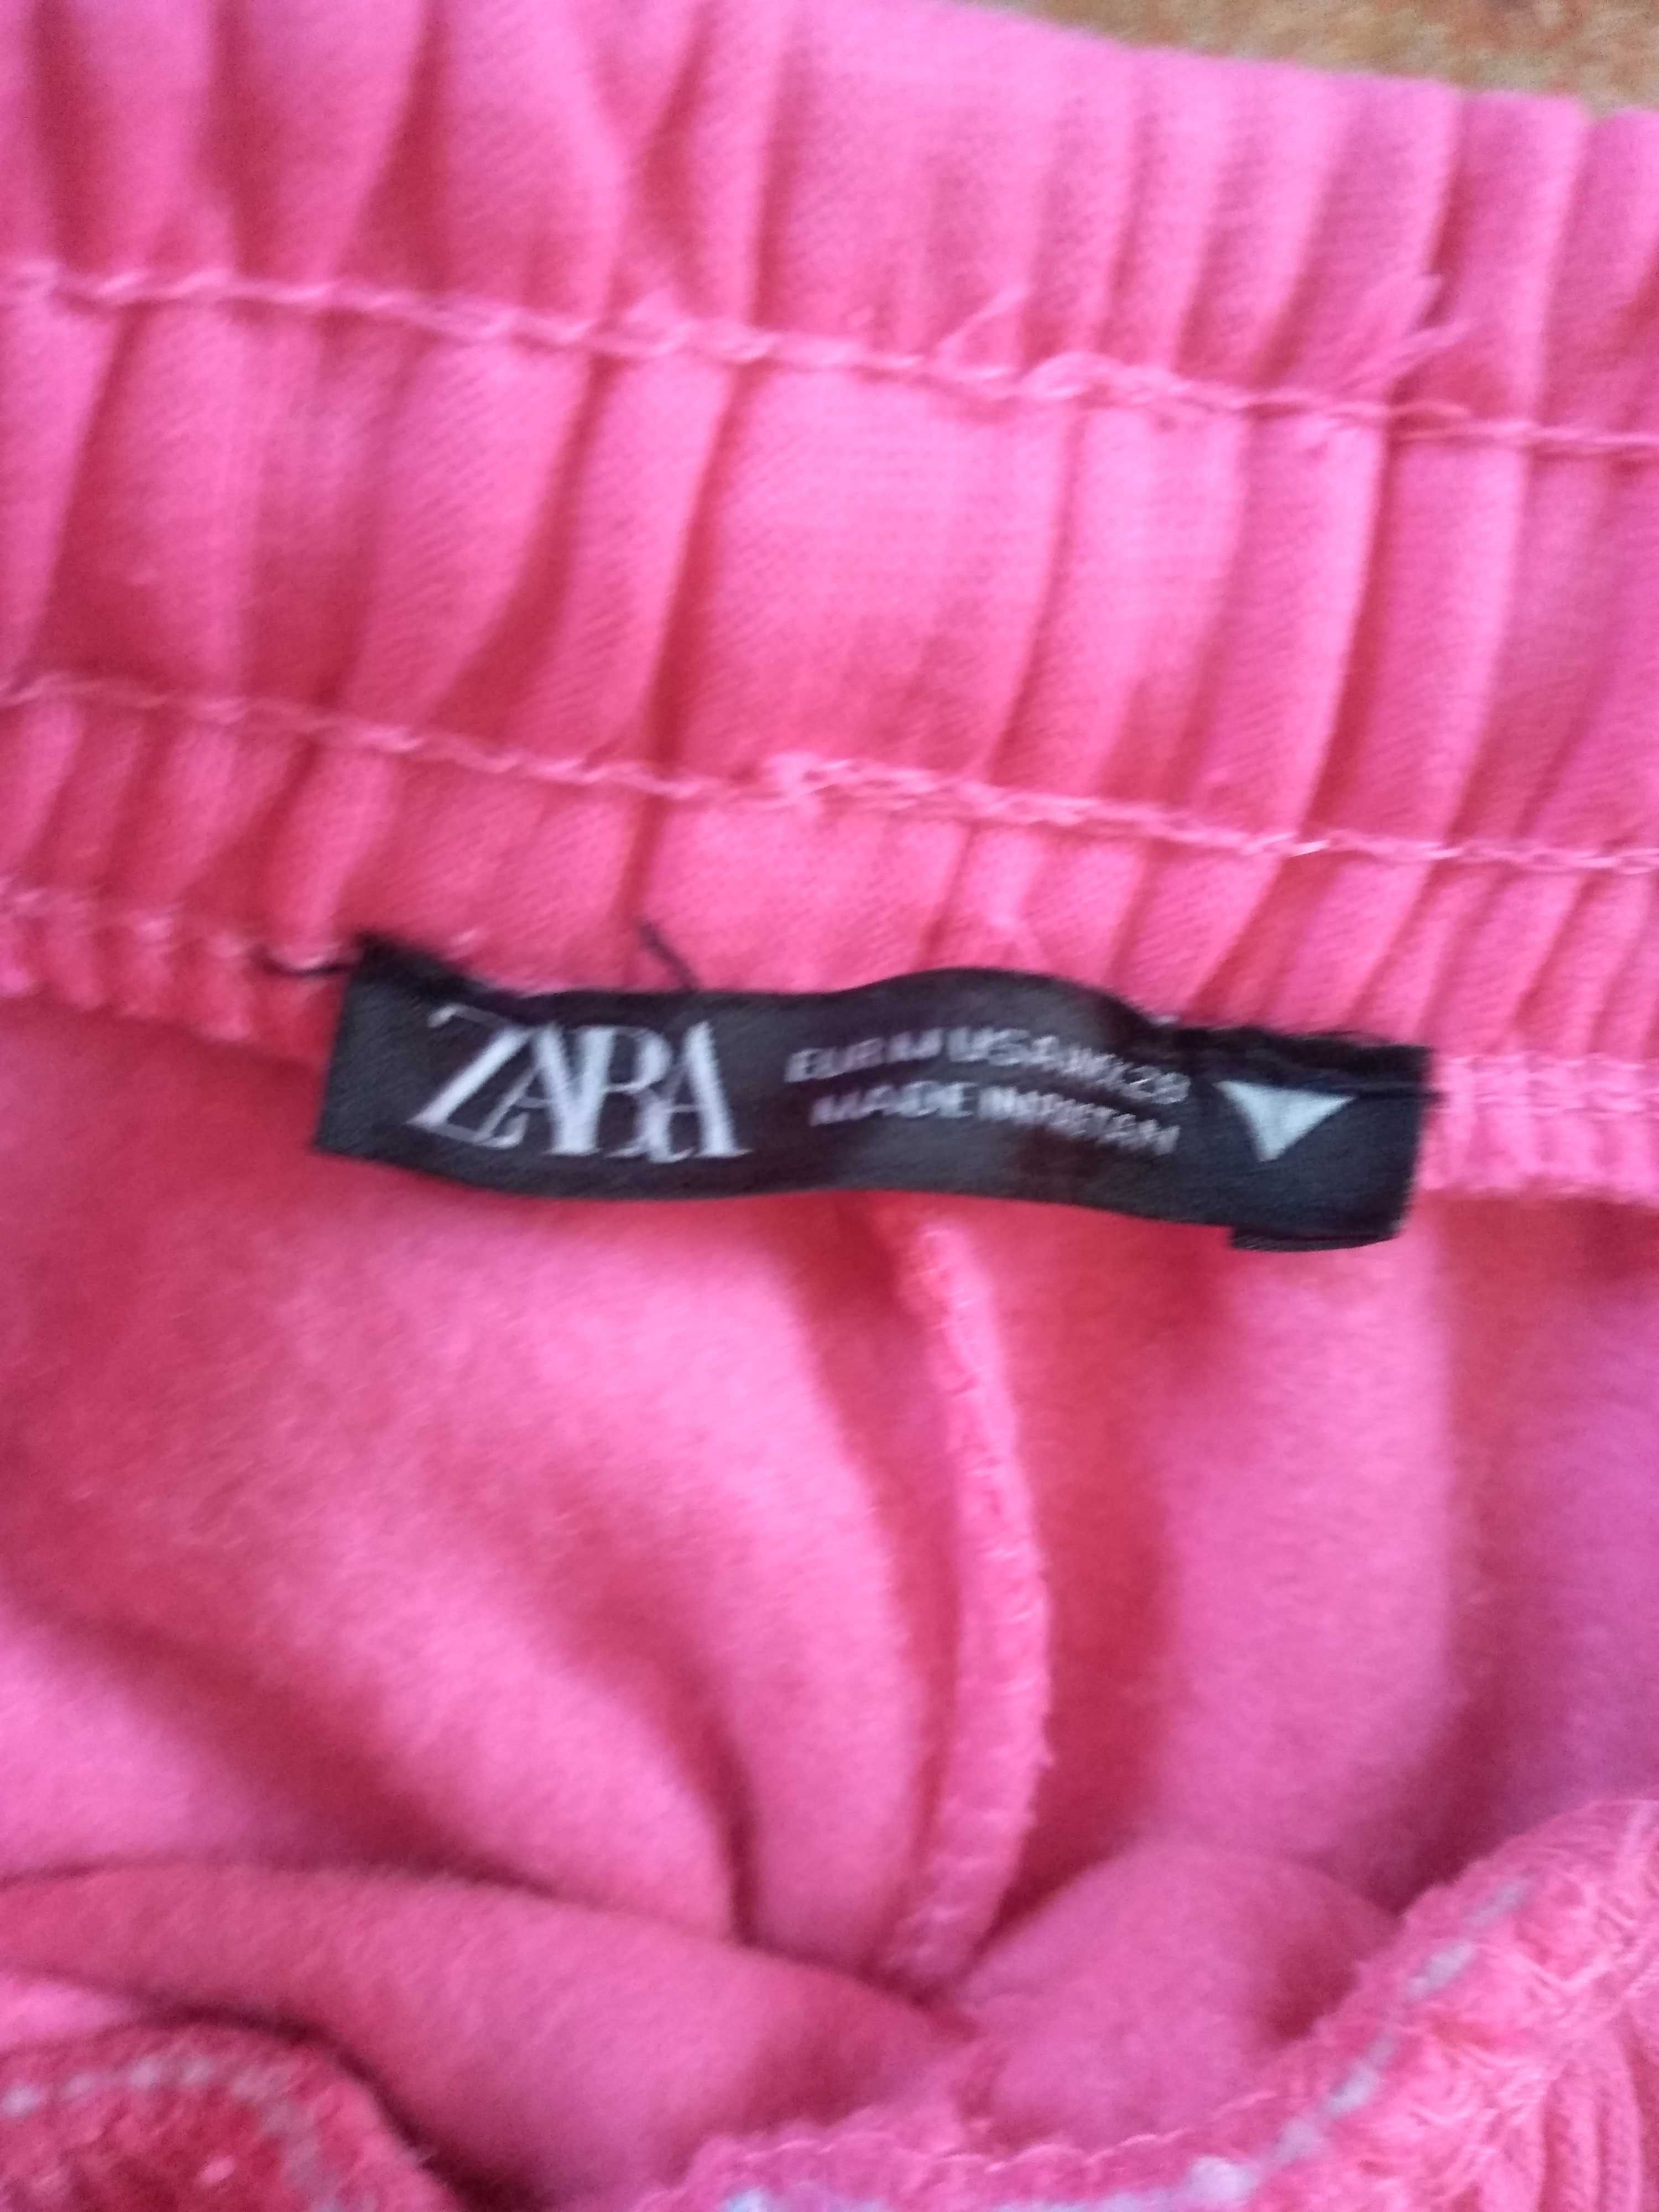 Spodnie Zara dresy nowe M 38-40 na gumce różowe dresowe damskie